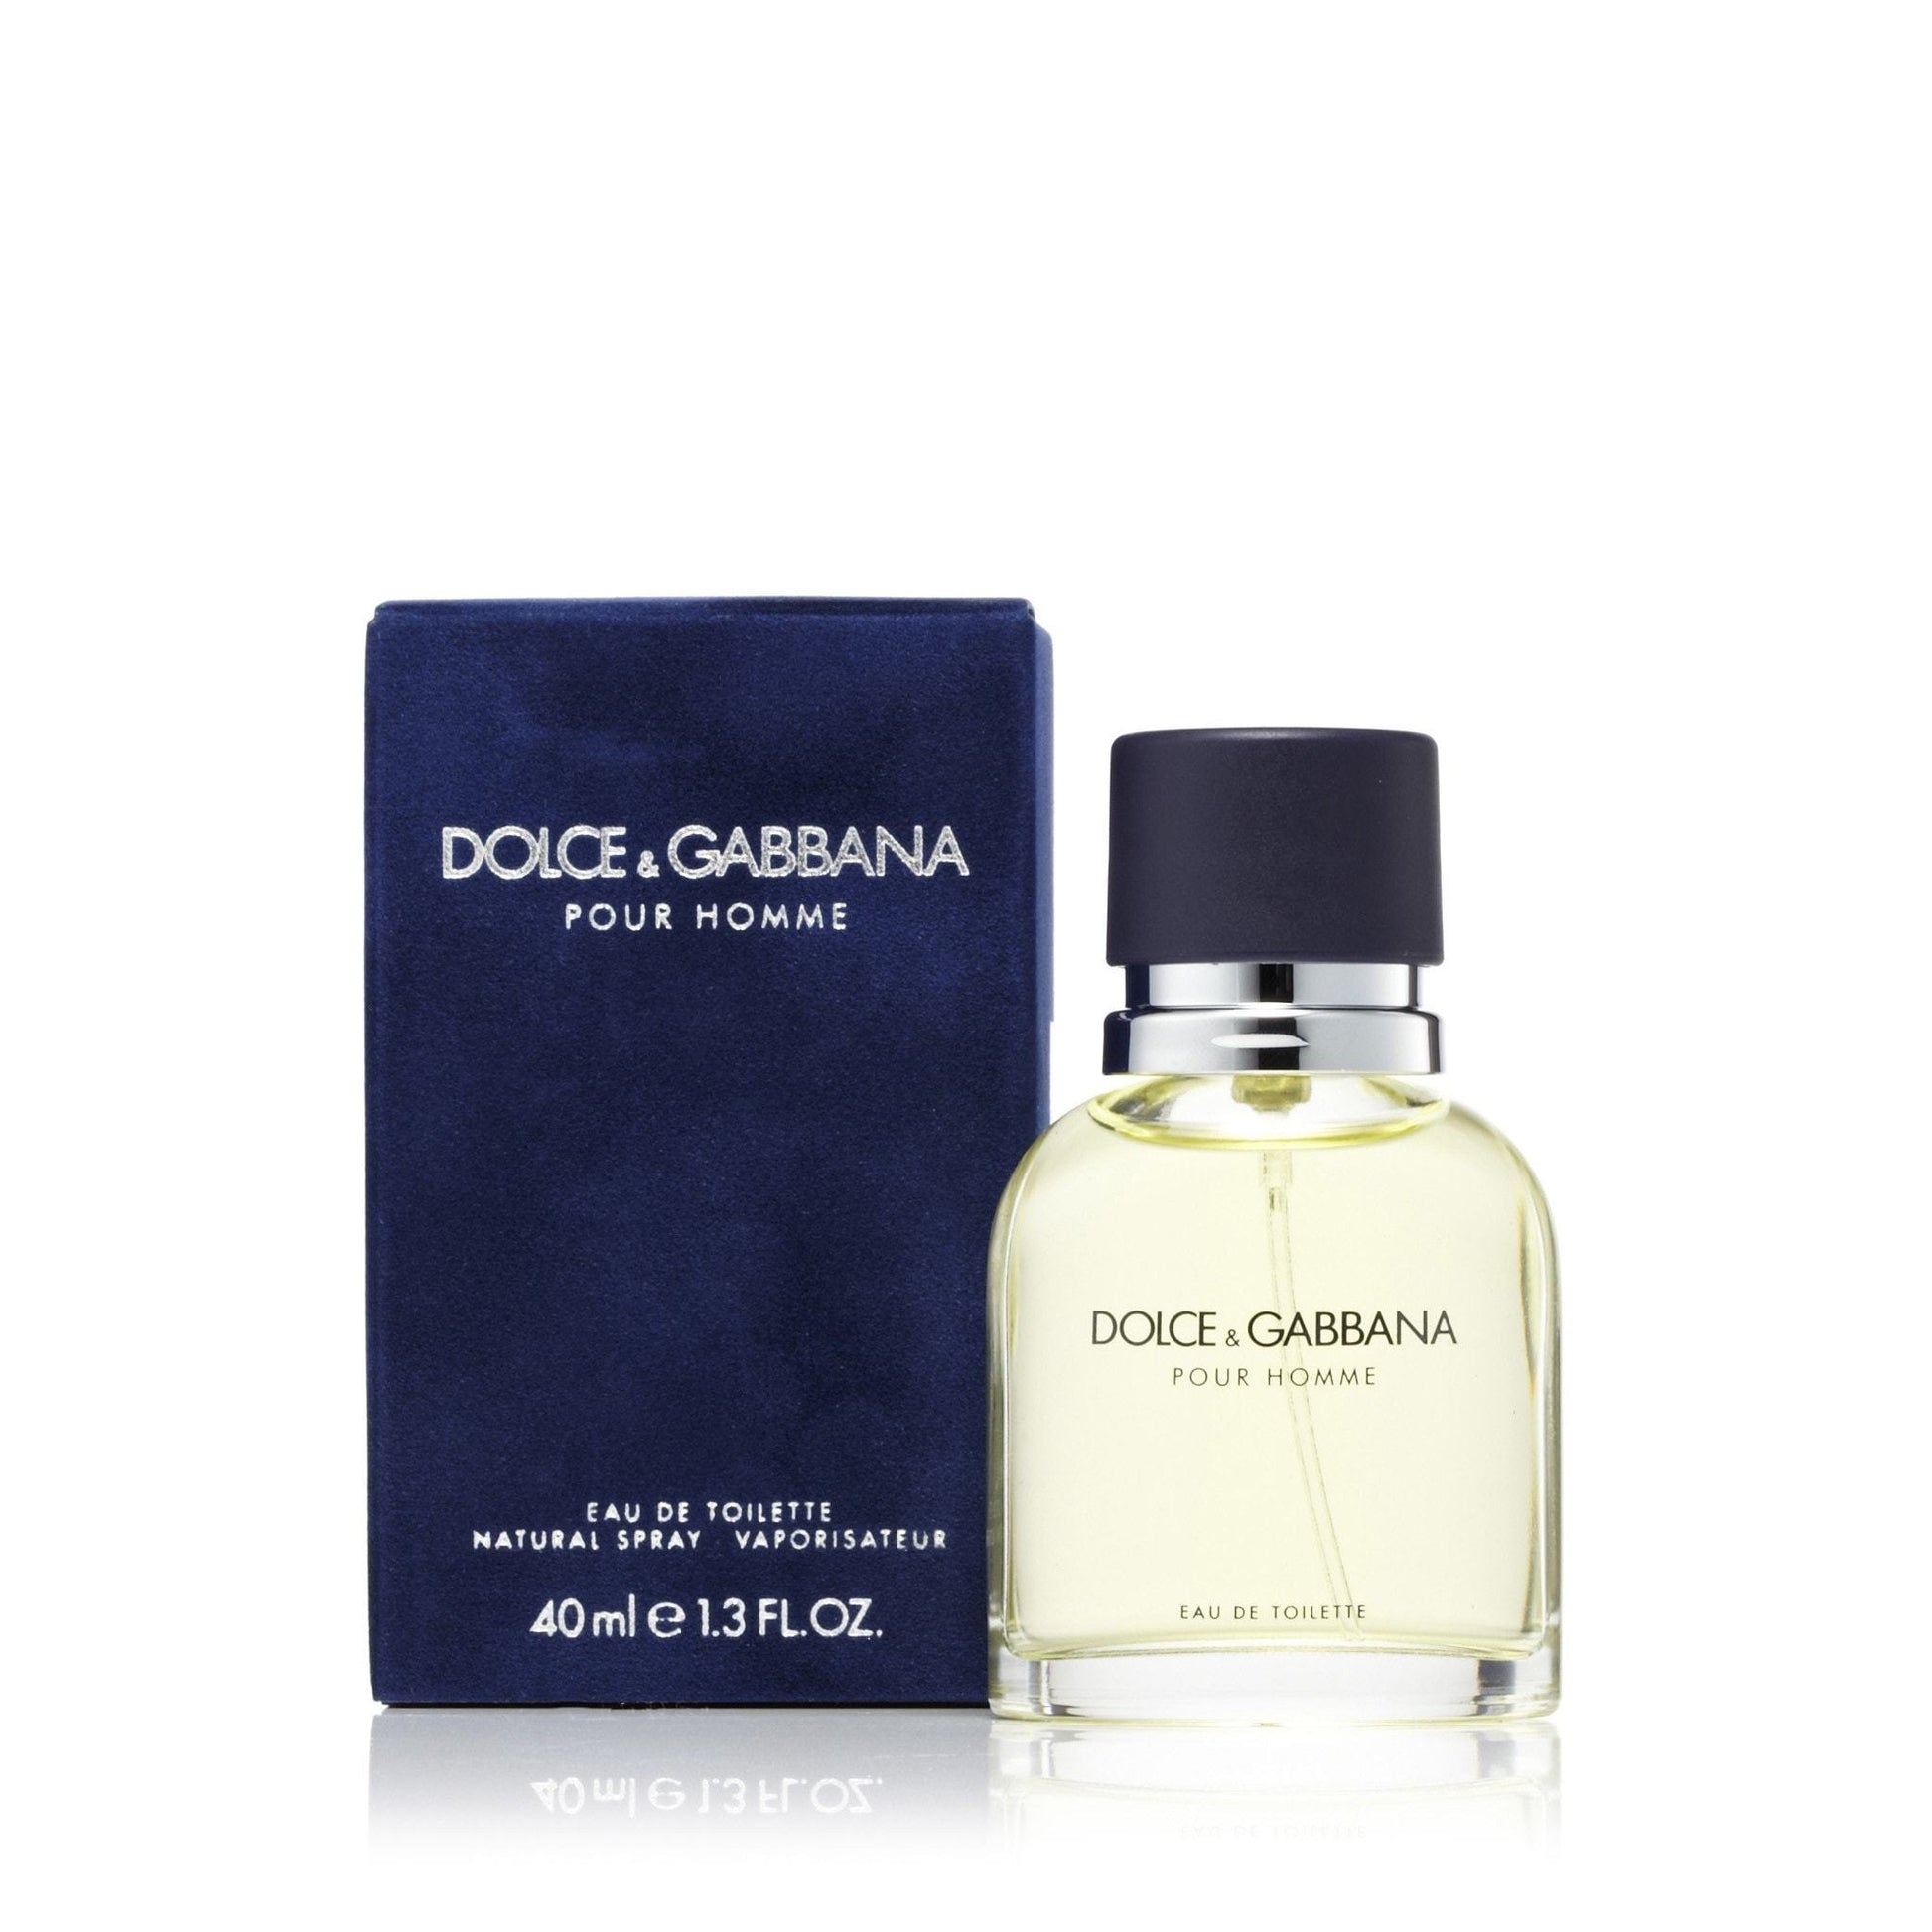 Dolce & Gabbana Eau de Toilette Spray for Men by D&G, Product image 5